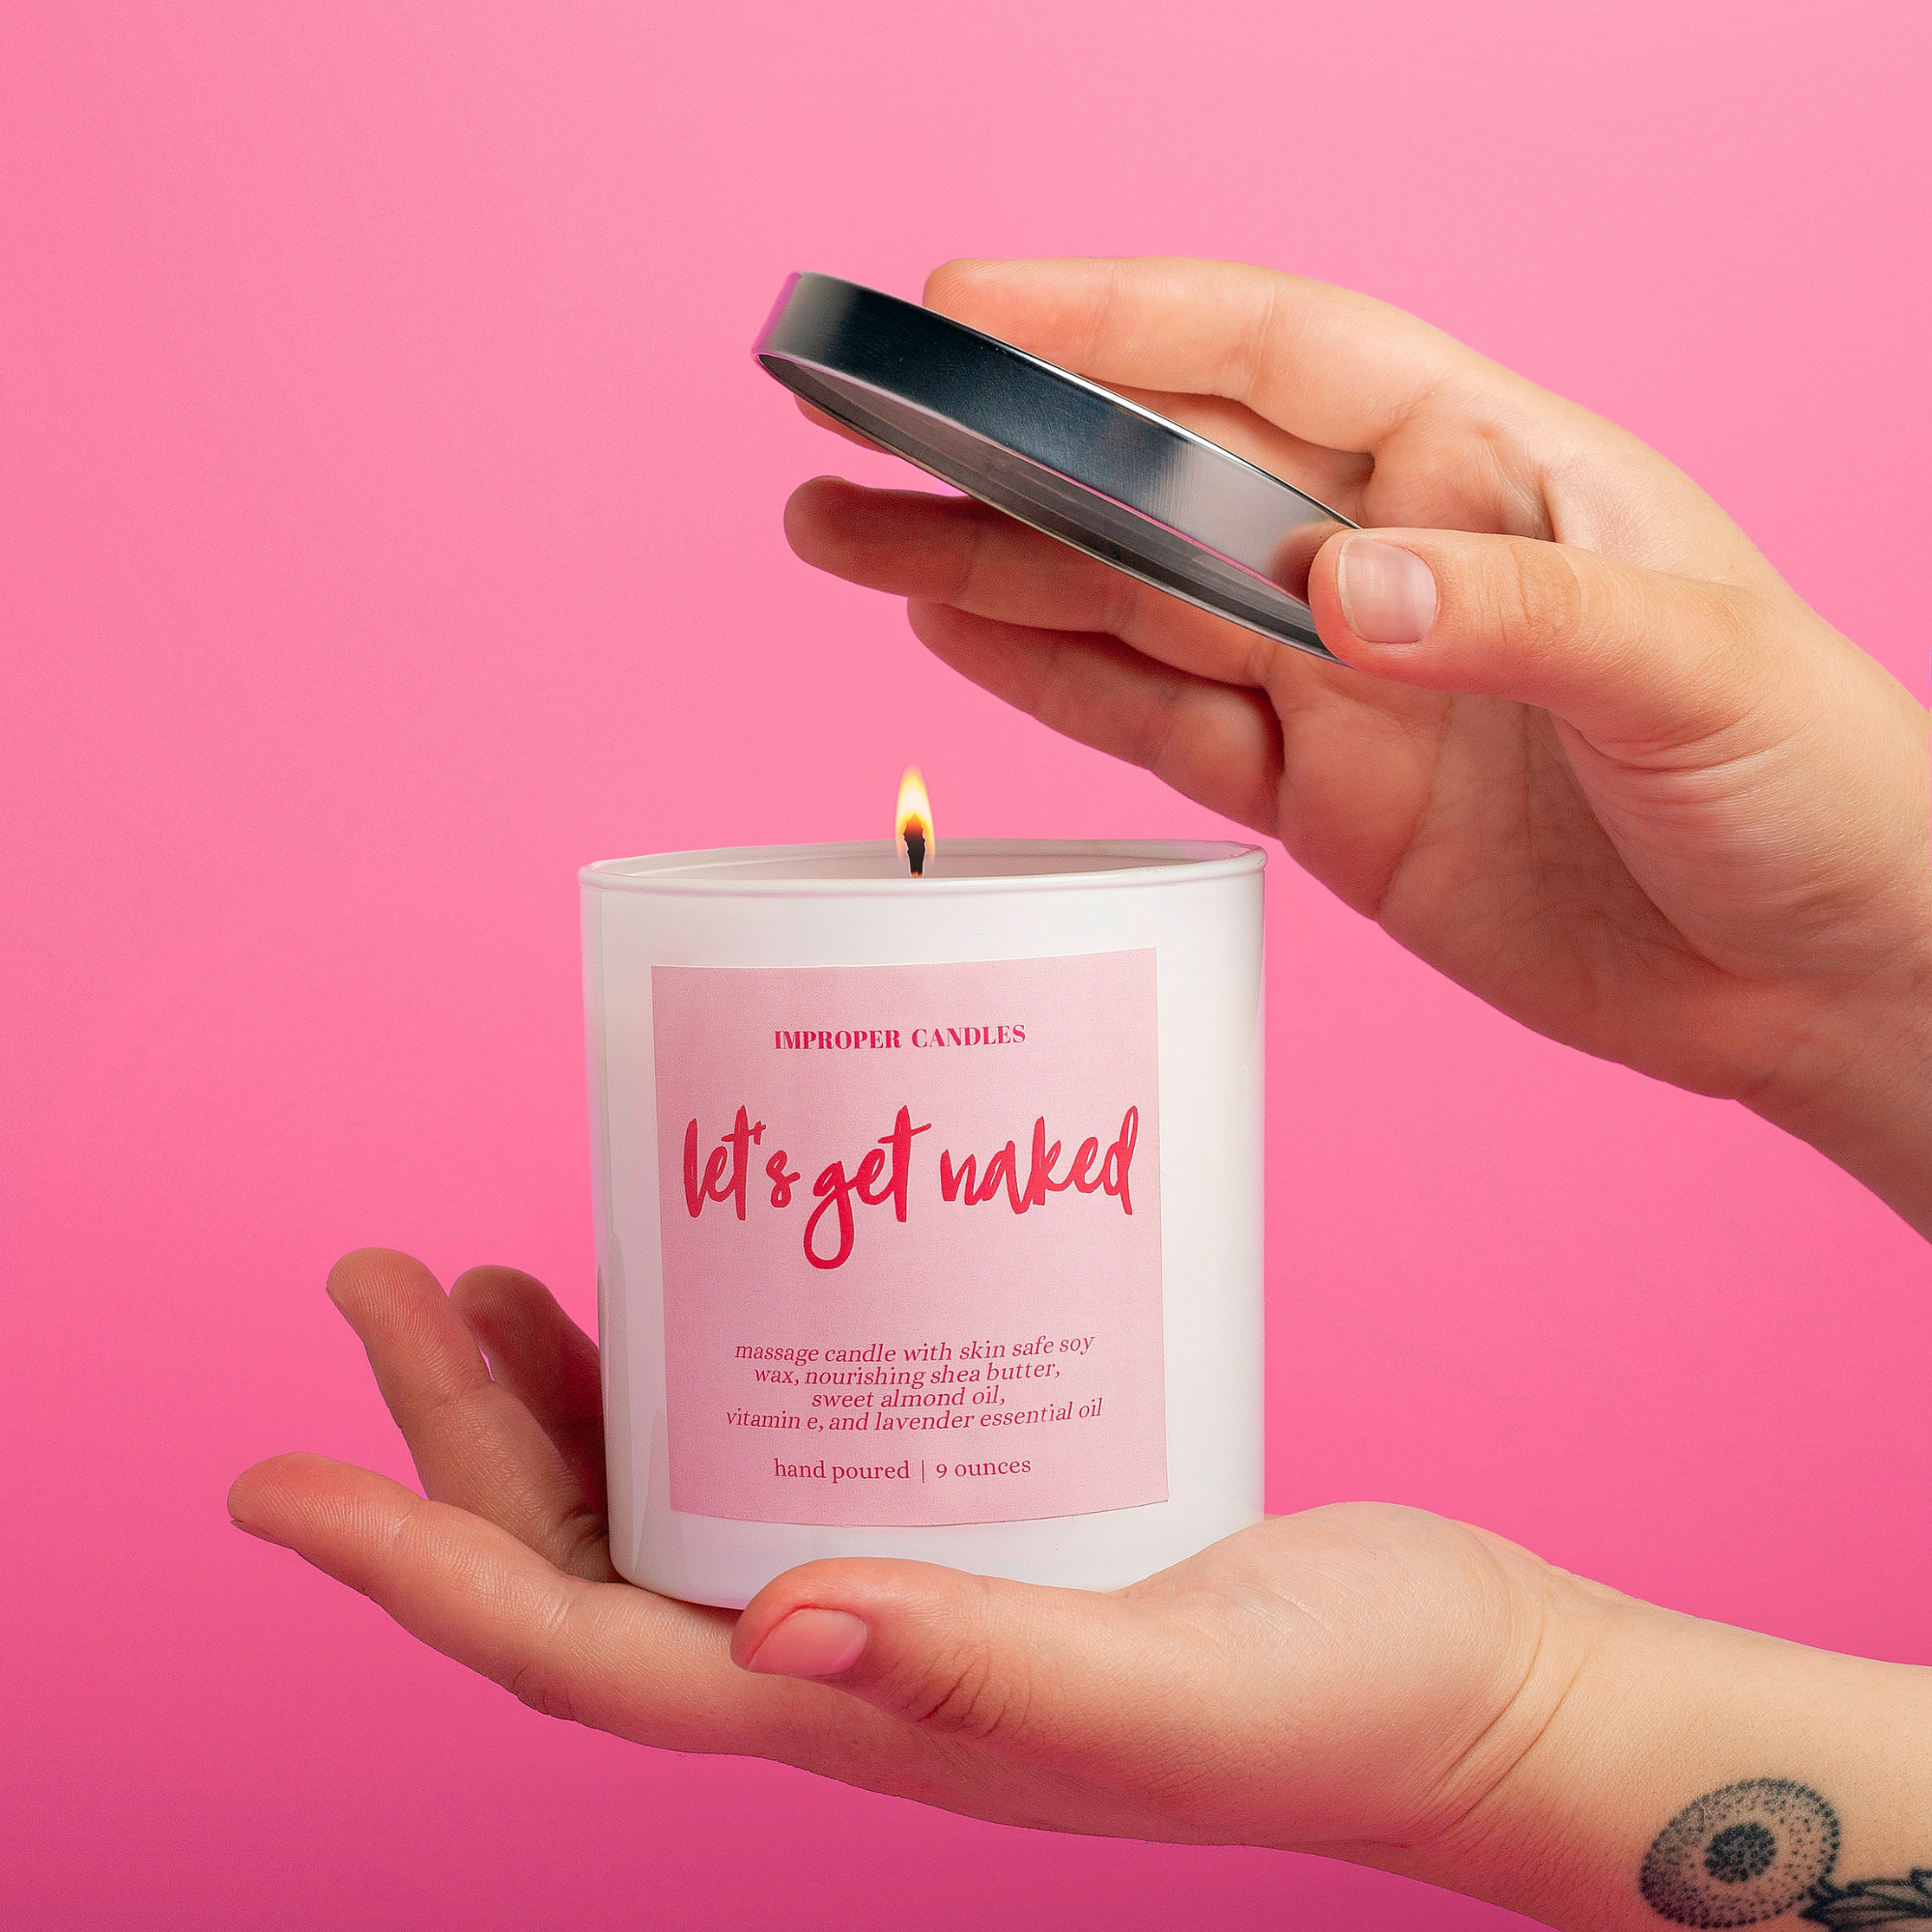 Let's Get Naked Massage Candle – Improper Candles